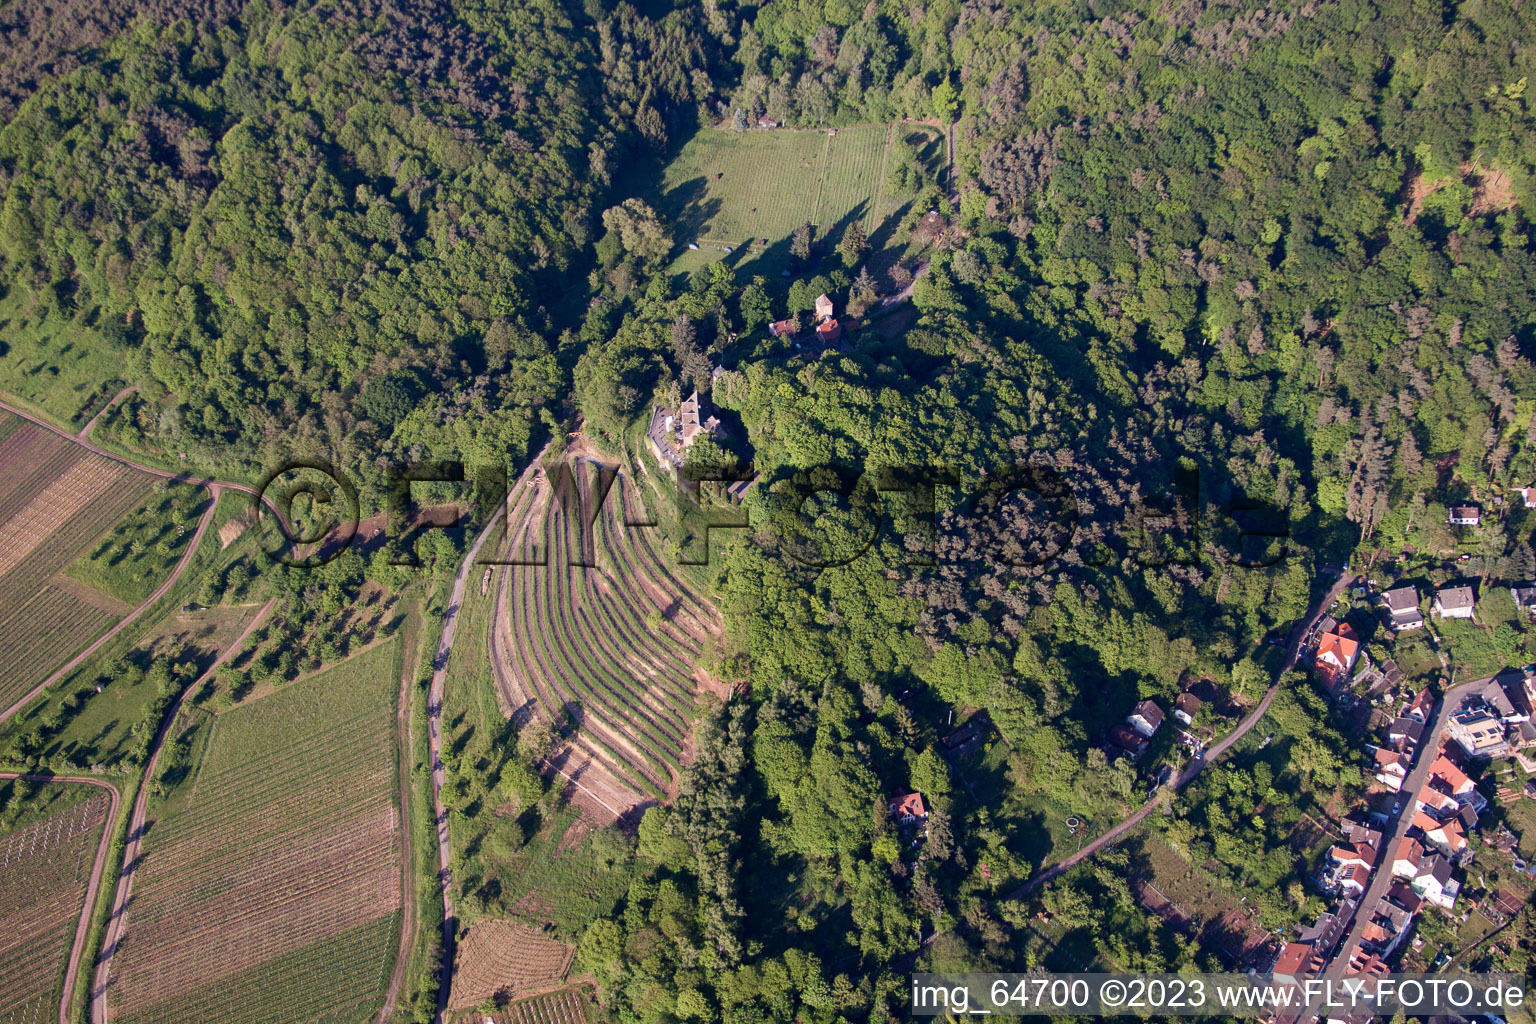 Sankt Martin im Bundesland Rheinland-Pfalz, Deutschland von einer Drohne aus